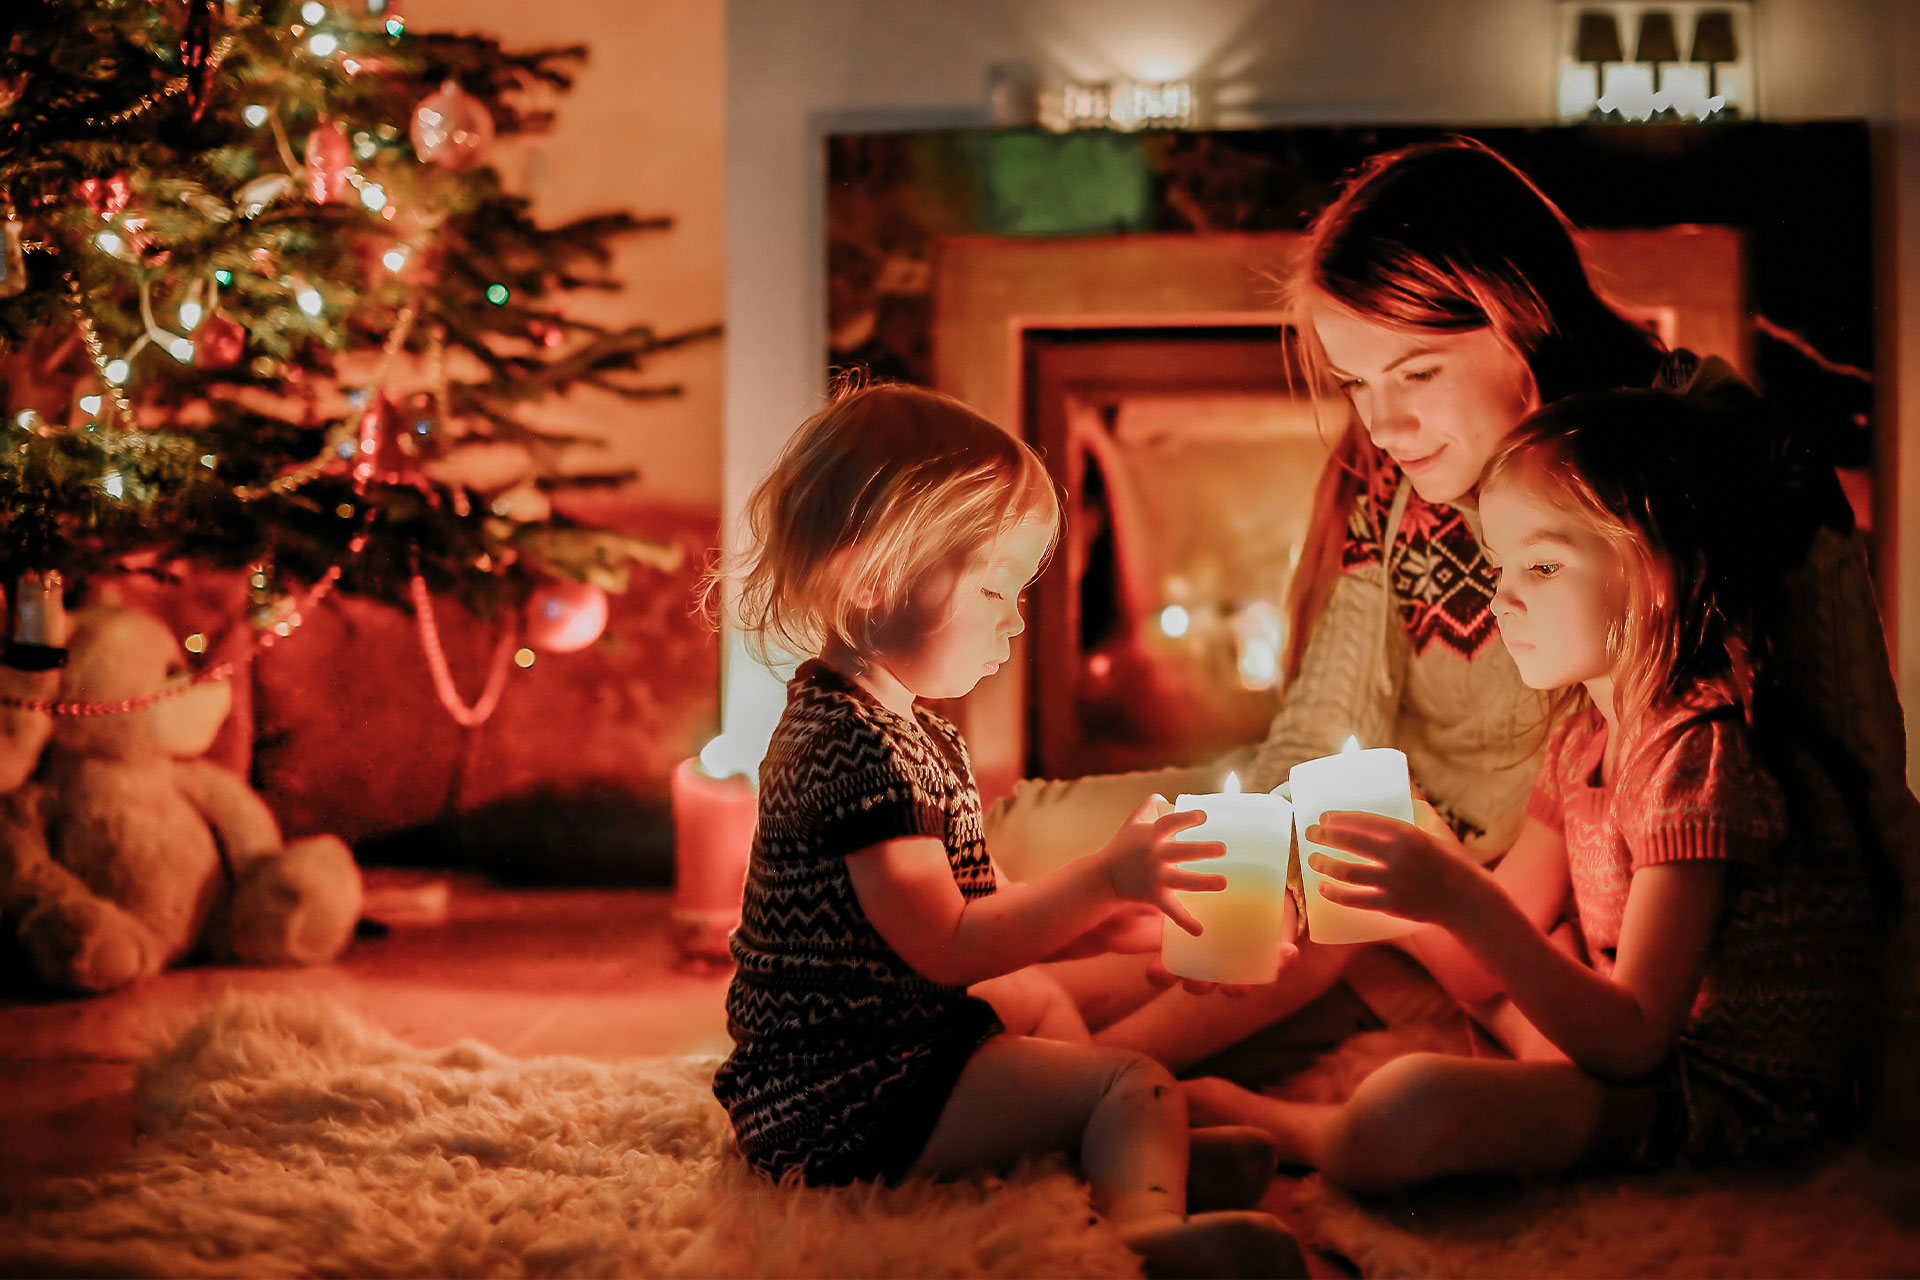 Tipps für schadenfreies Weihnachten - Mutter sitzt mit zwei Kindern unterm Weihanchtsbaum und zündet Kerzen an